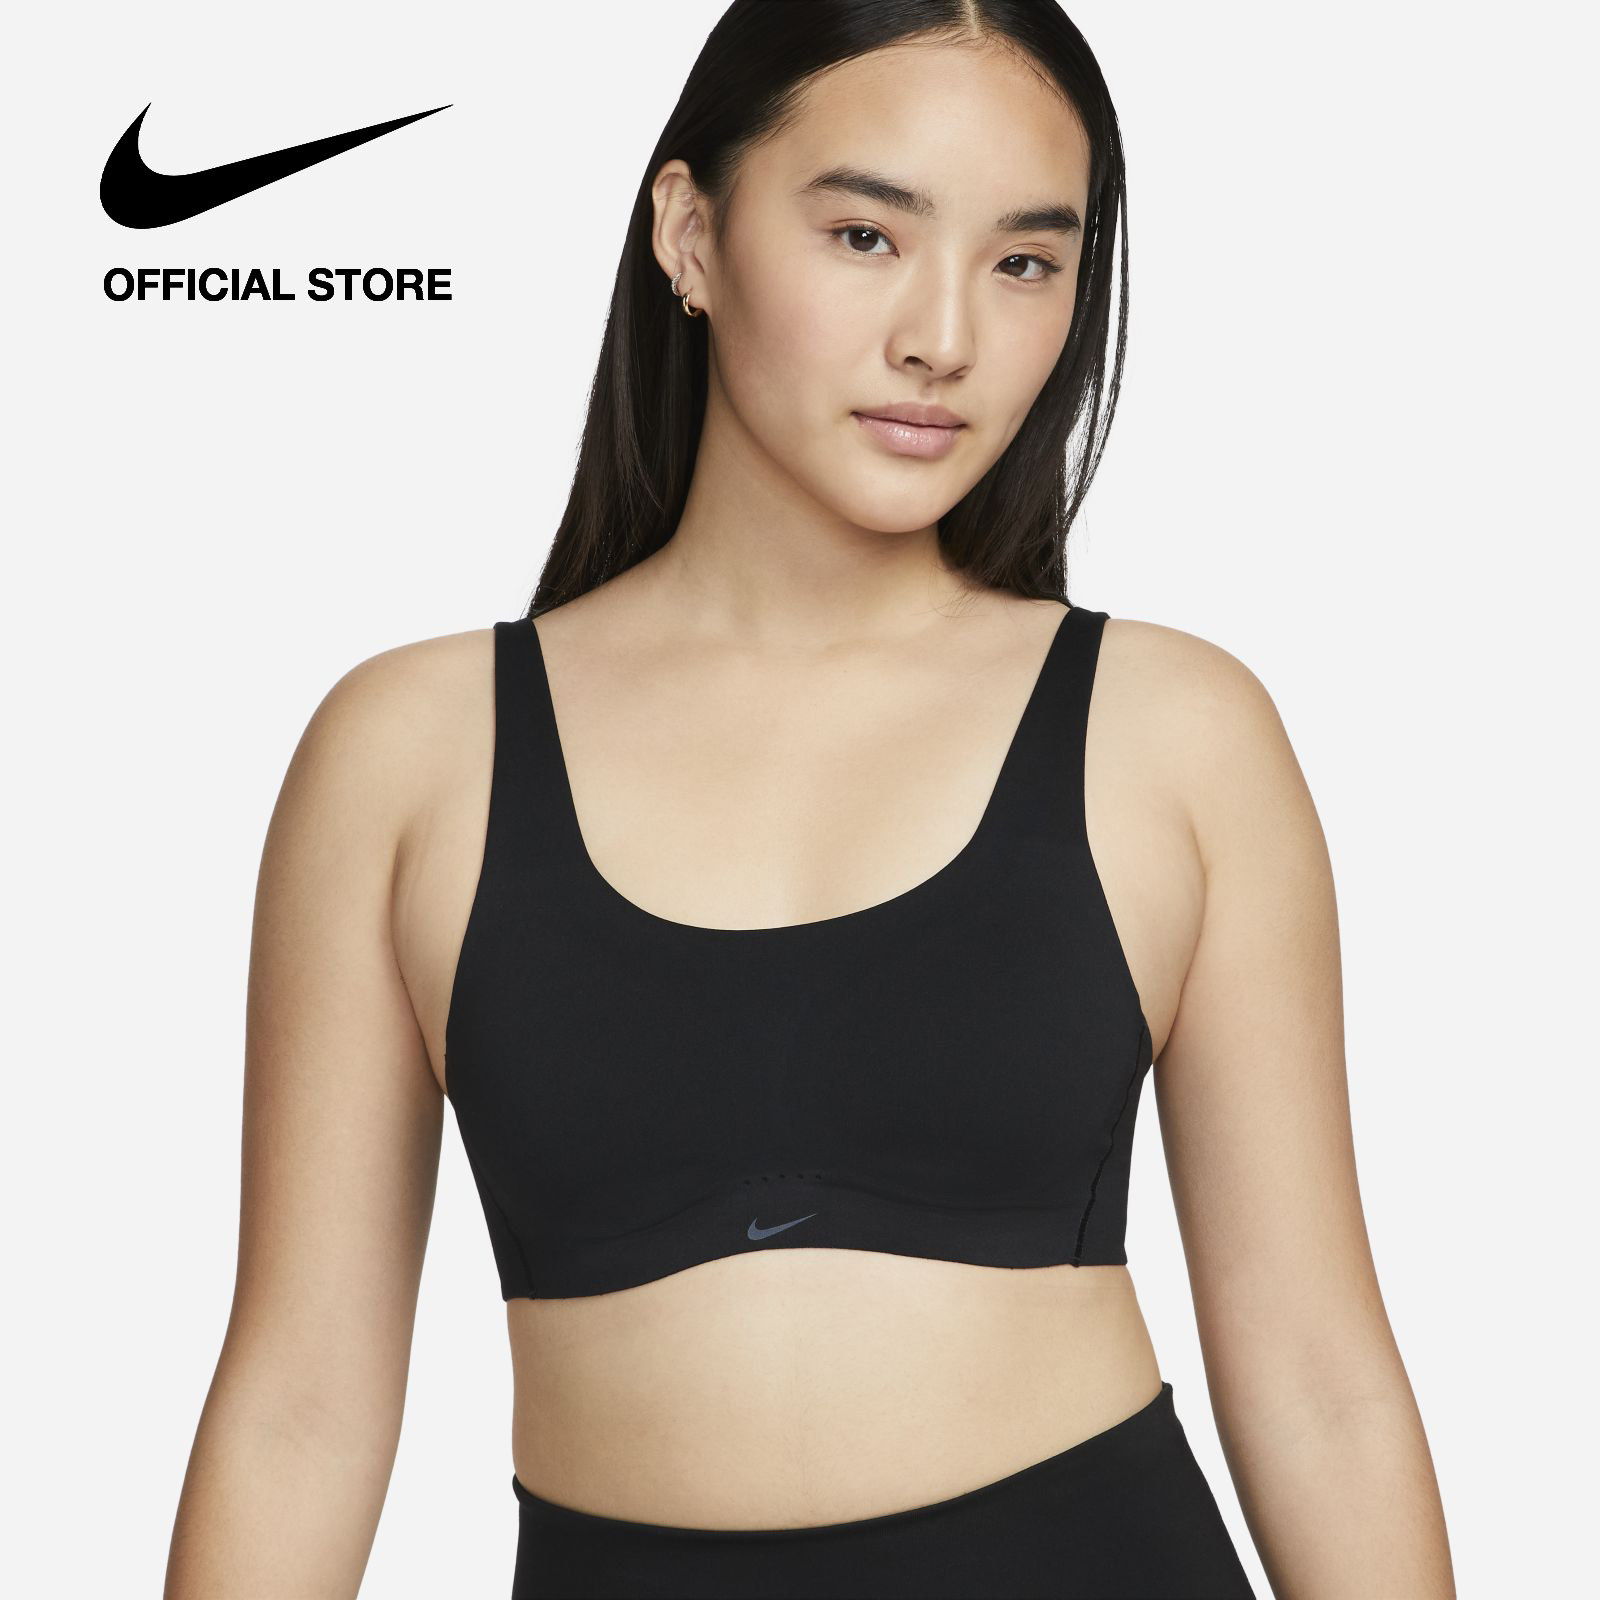 Nike Dri-FIT Women's Alate Minimalist Light-Support Padded Sports